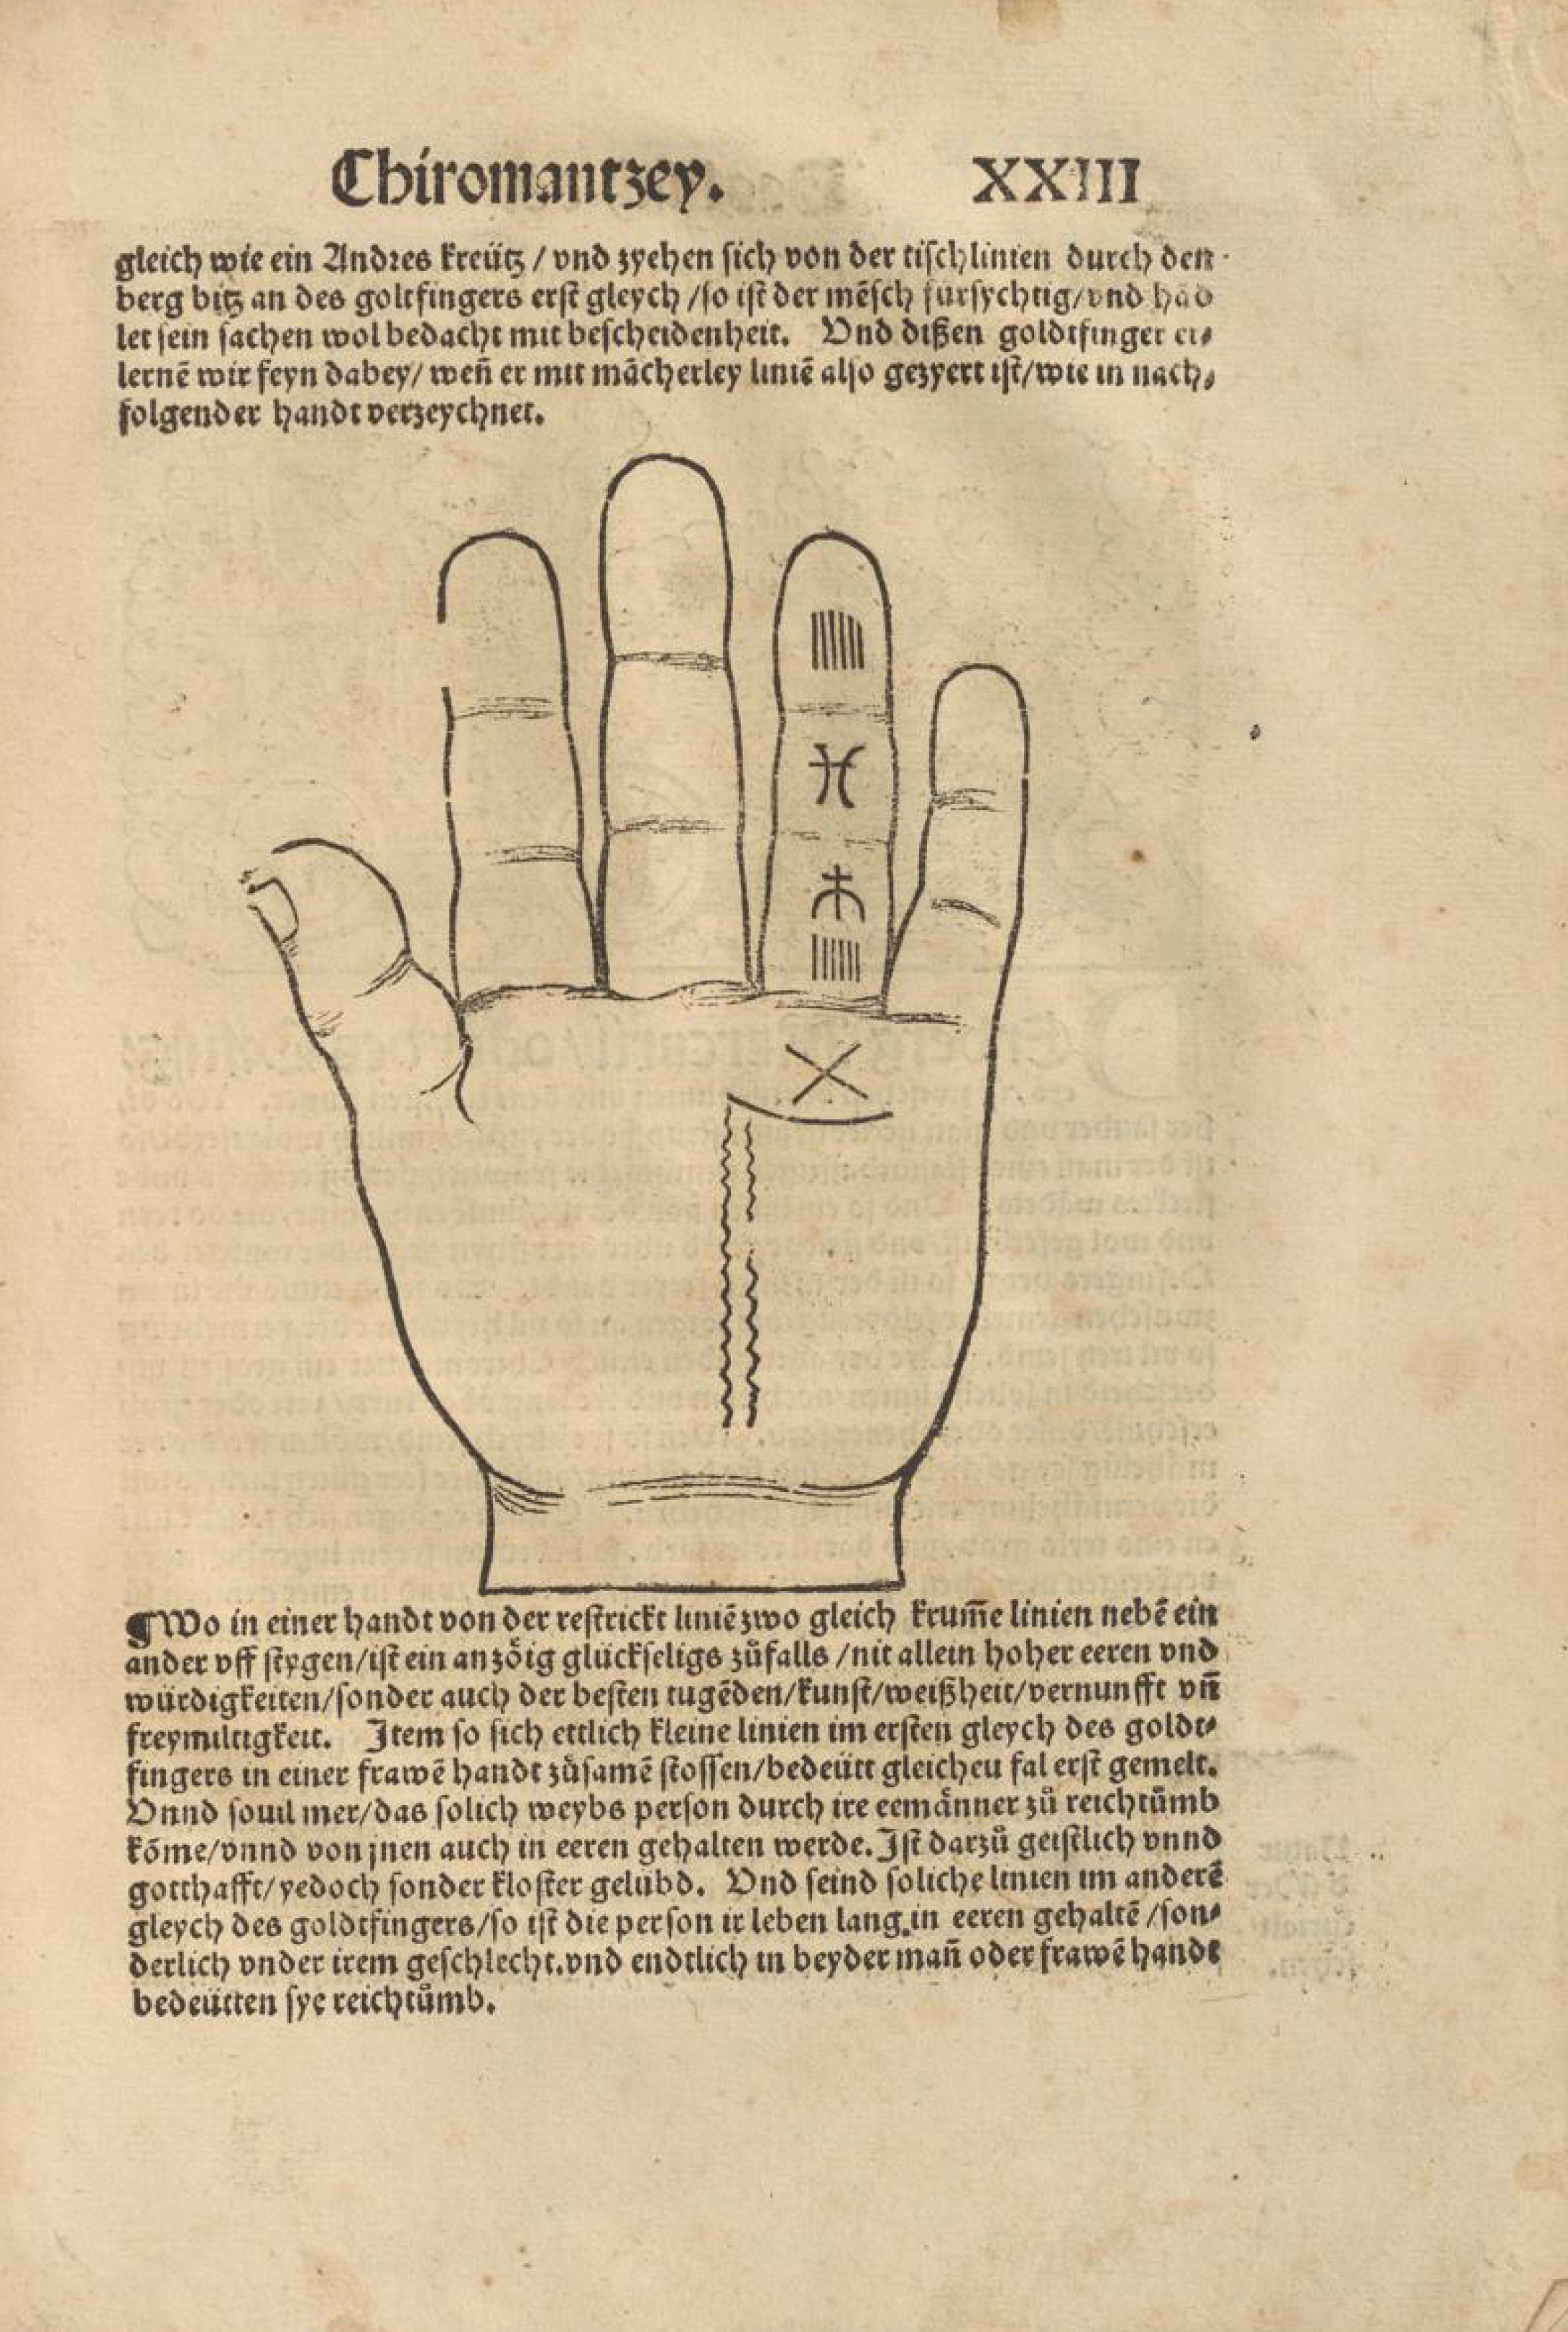 Buchseite mit Text und Illustration zur Chiromantie. Zu sehen ist eine Handfläche mit eingetragenen Symbolen am Ringfinger und der Handfläche.